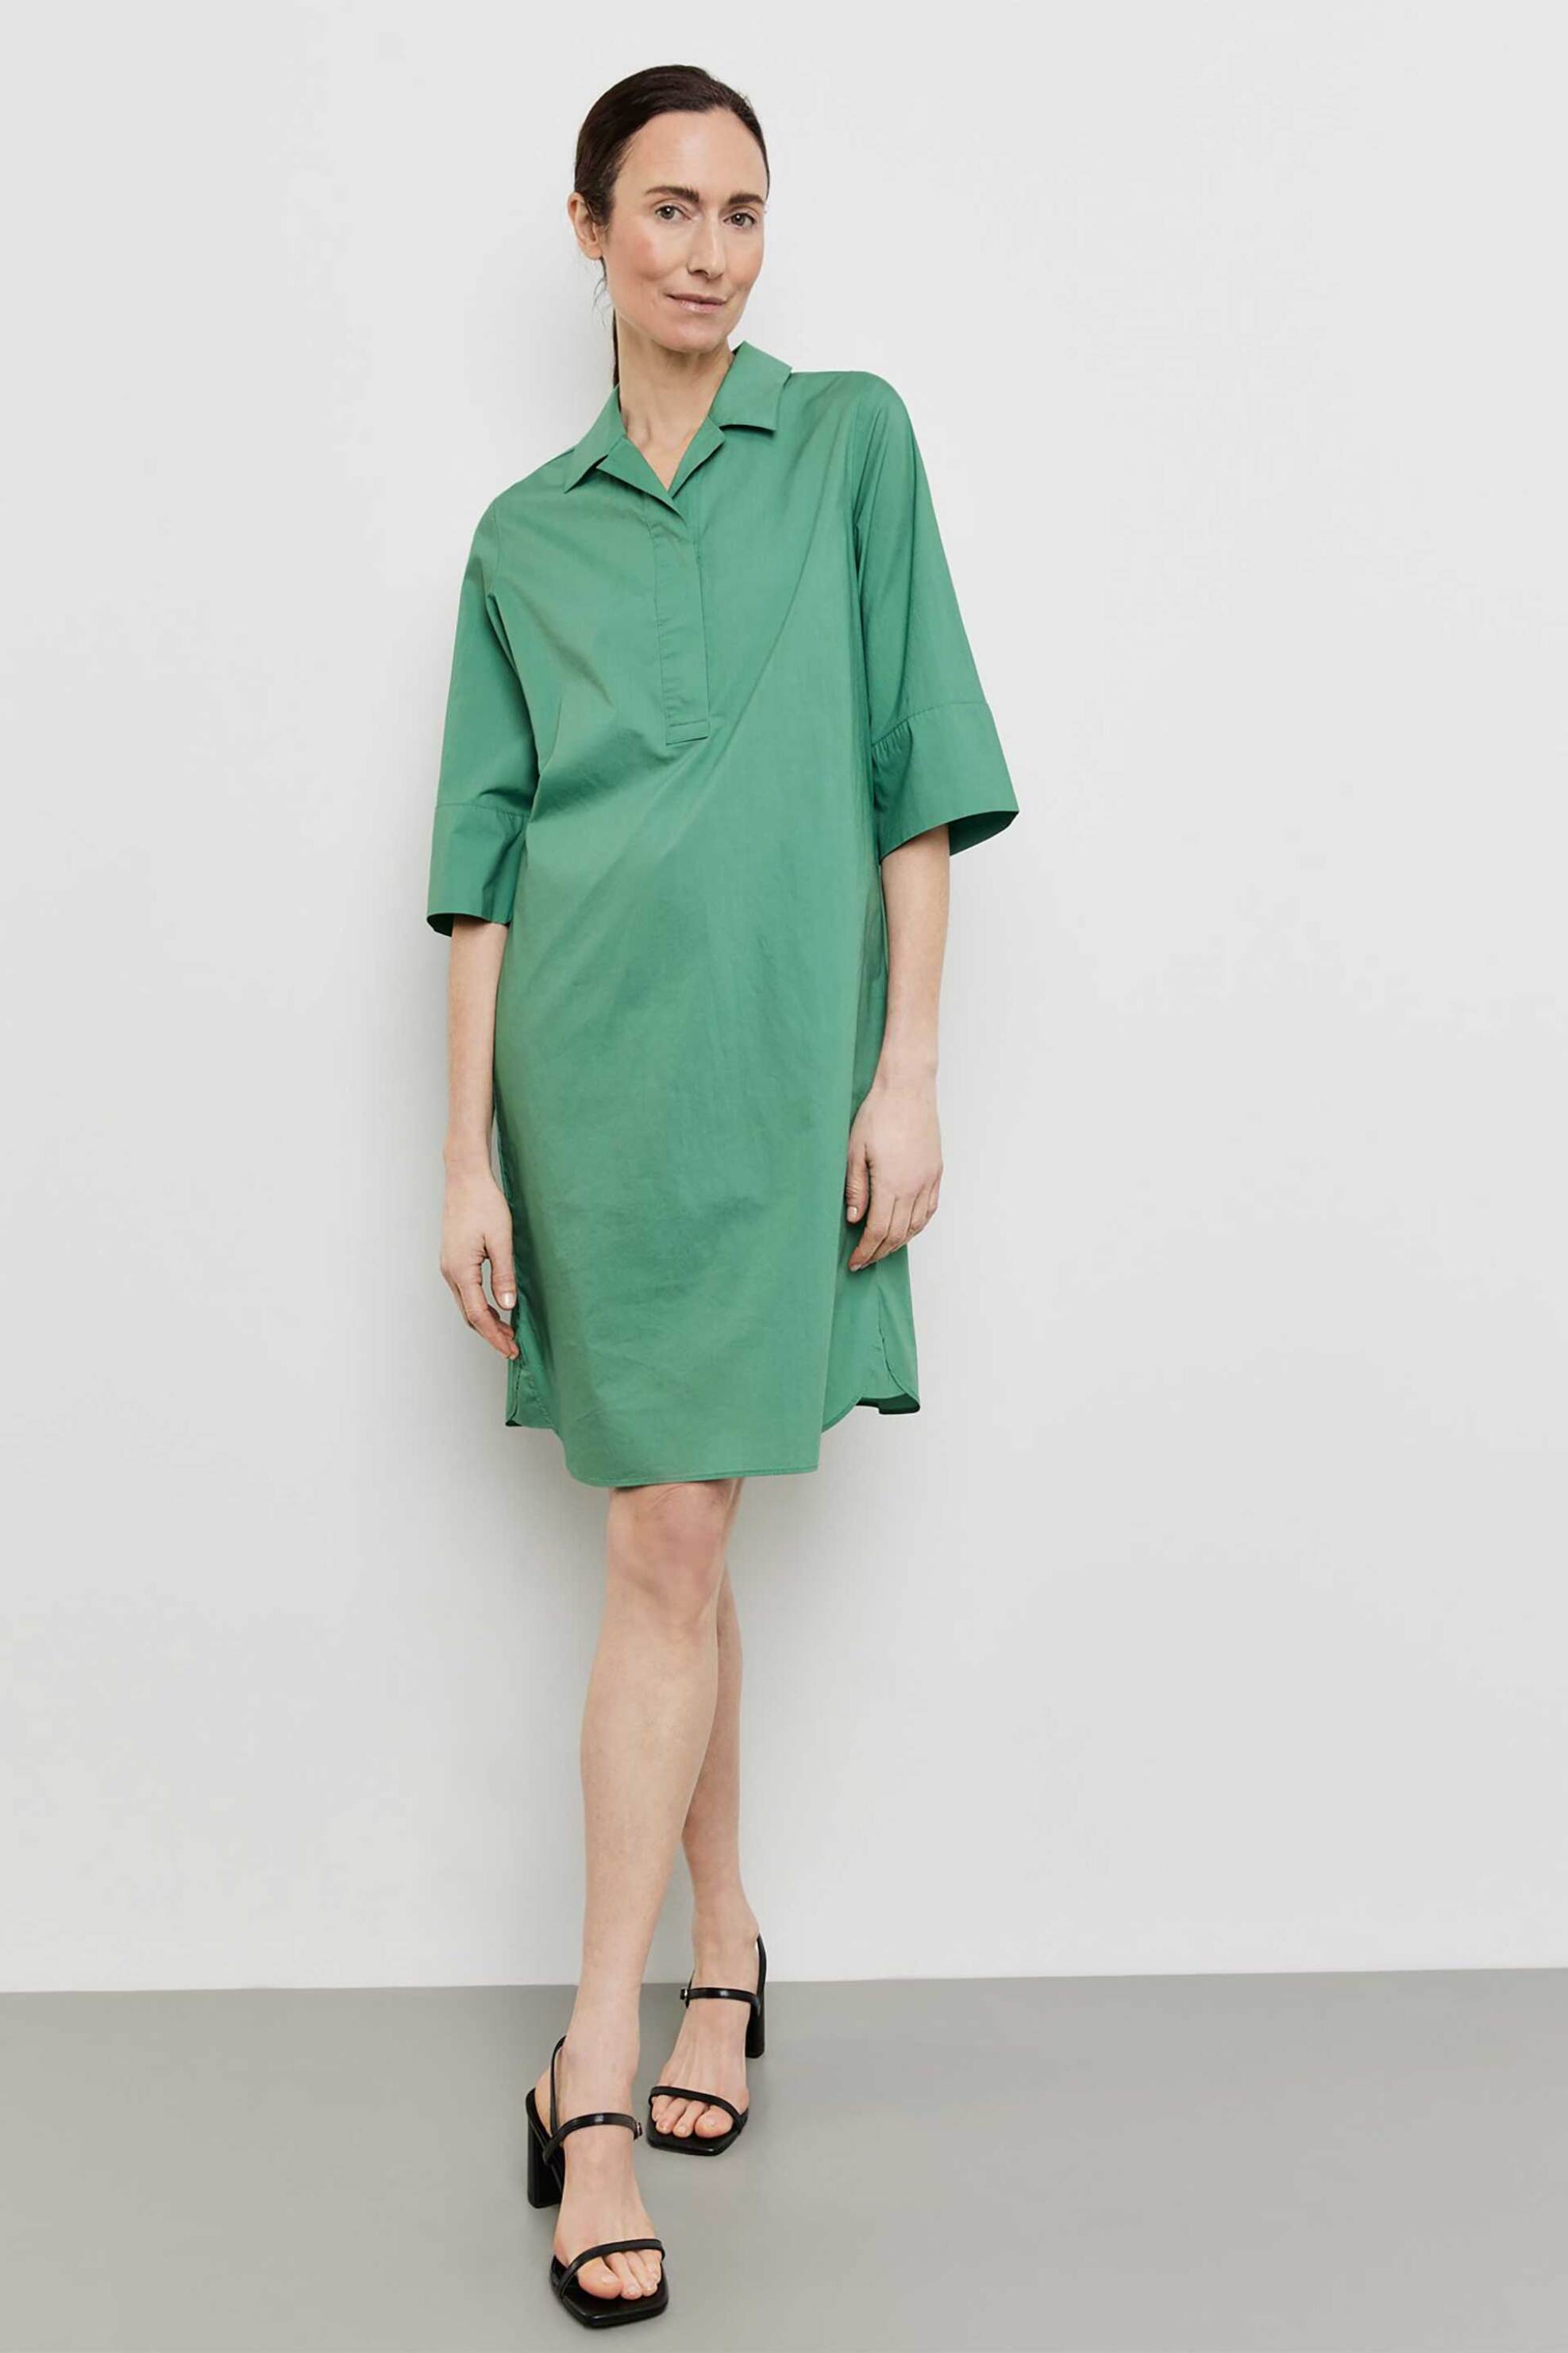 Γυναικεία Ρούχα & Αξεσουάρ > Γυναικεία Ρούχα > Γυναικεία Φορέματα > Γυναικεία Φορέματα Μίνι Gerry Weber γυναικείο mini φόρεμα με μανίκι 3/4 Casual Fit - 285045-66449 Πράσινο